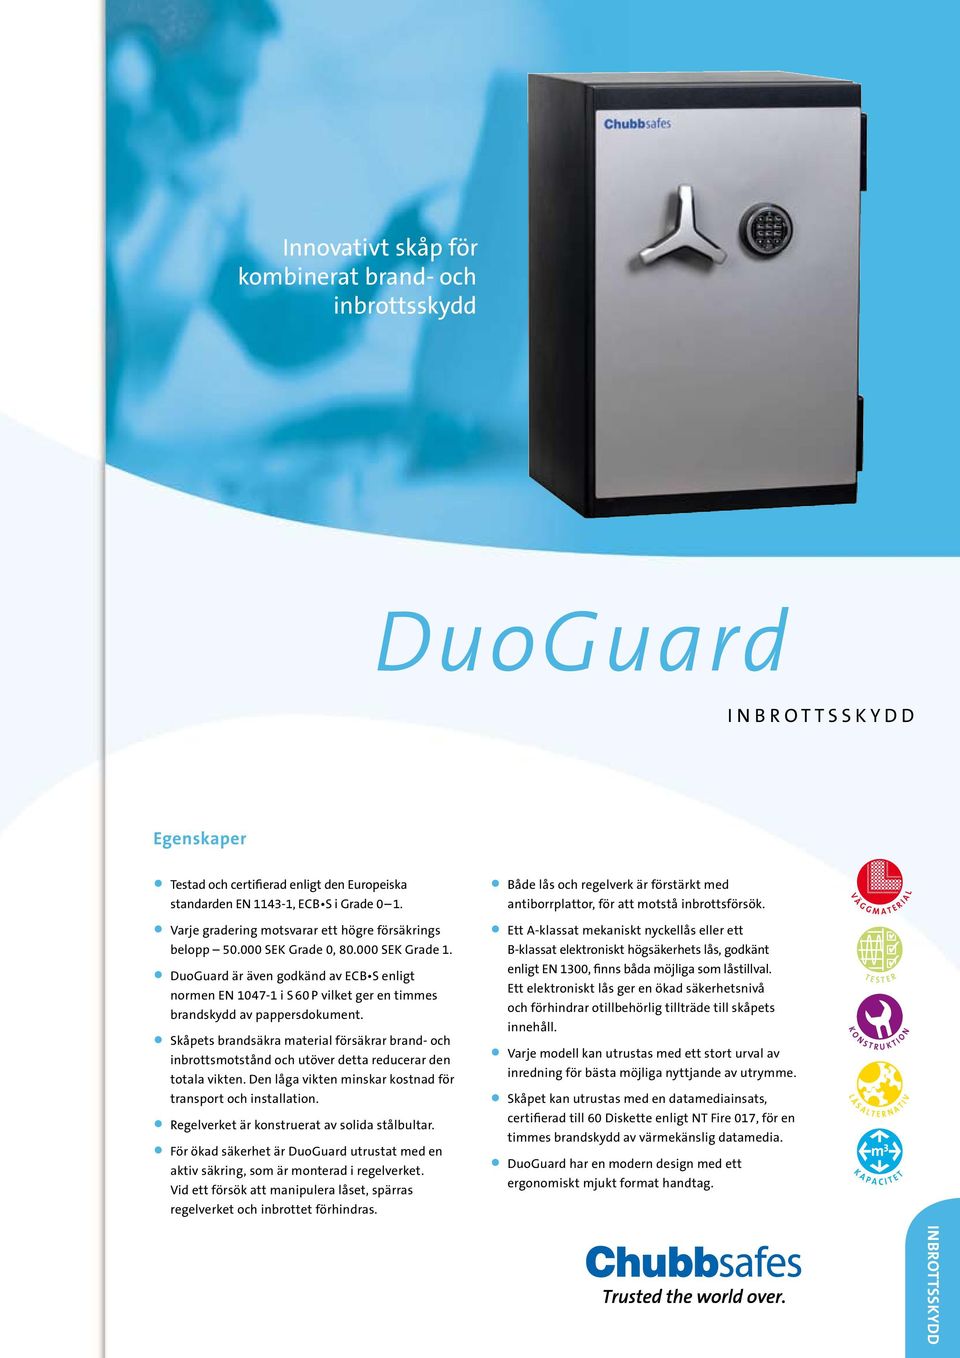 DuoGuard är även godkänd av ECB S enligt normen EN 1047-1 i S 60 P vilket ger en timmes brandskydd av pappersdokument.